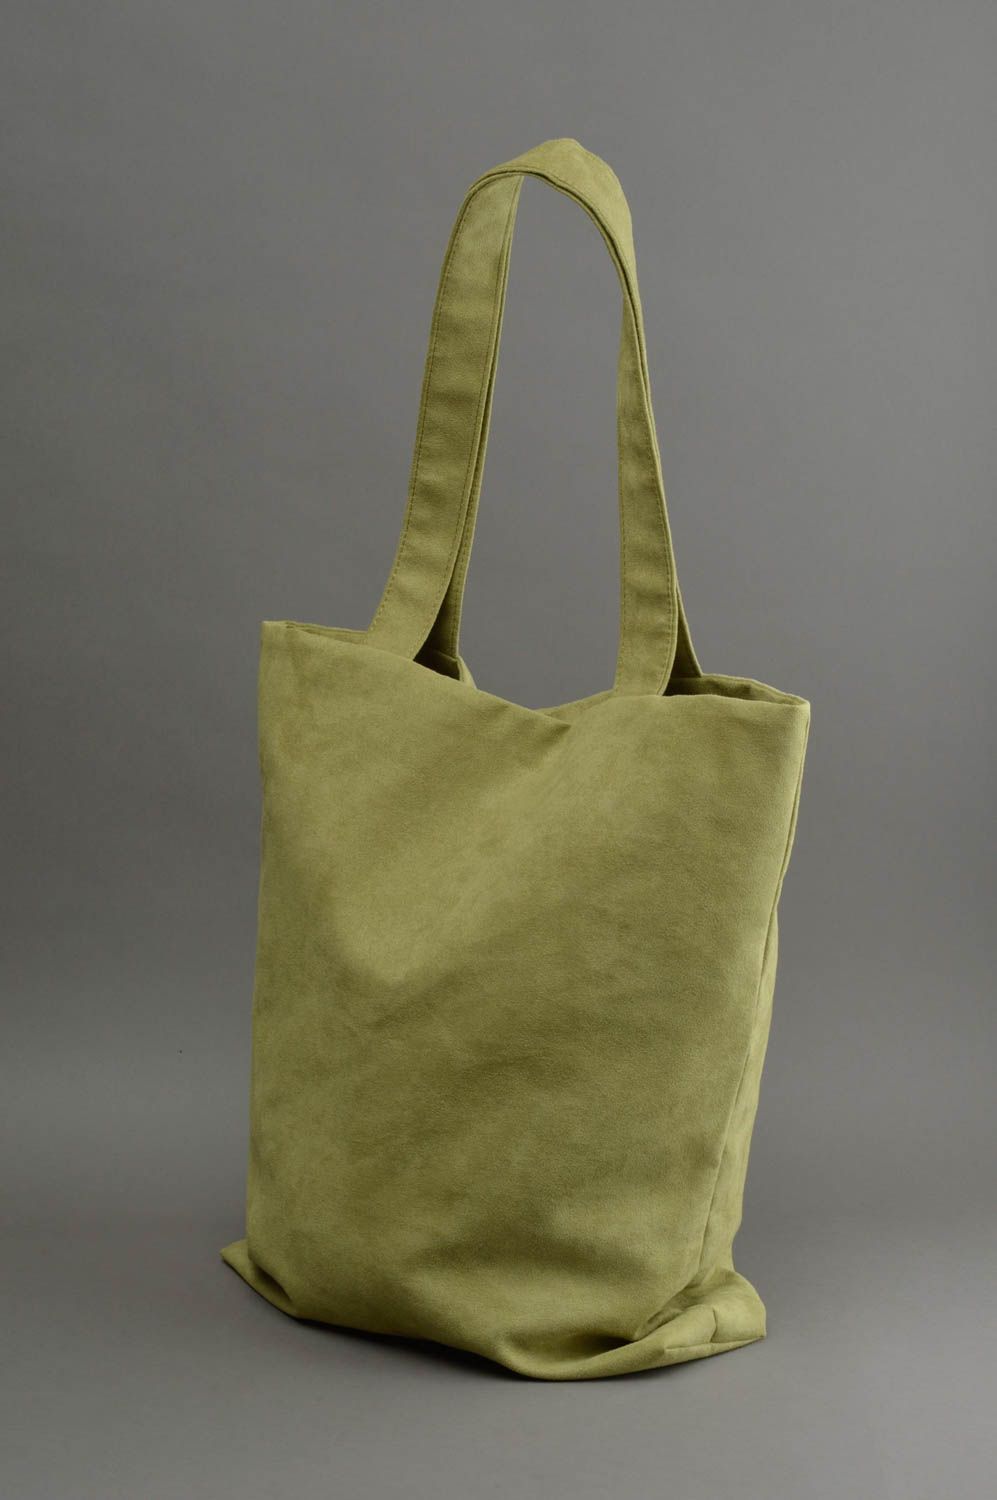 Handmade cloth handbag green big bag suede purse gift idea for women photo 2